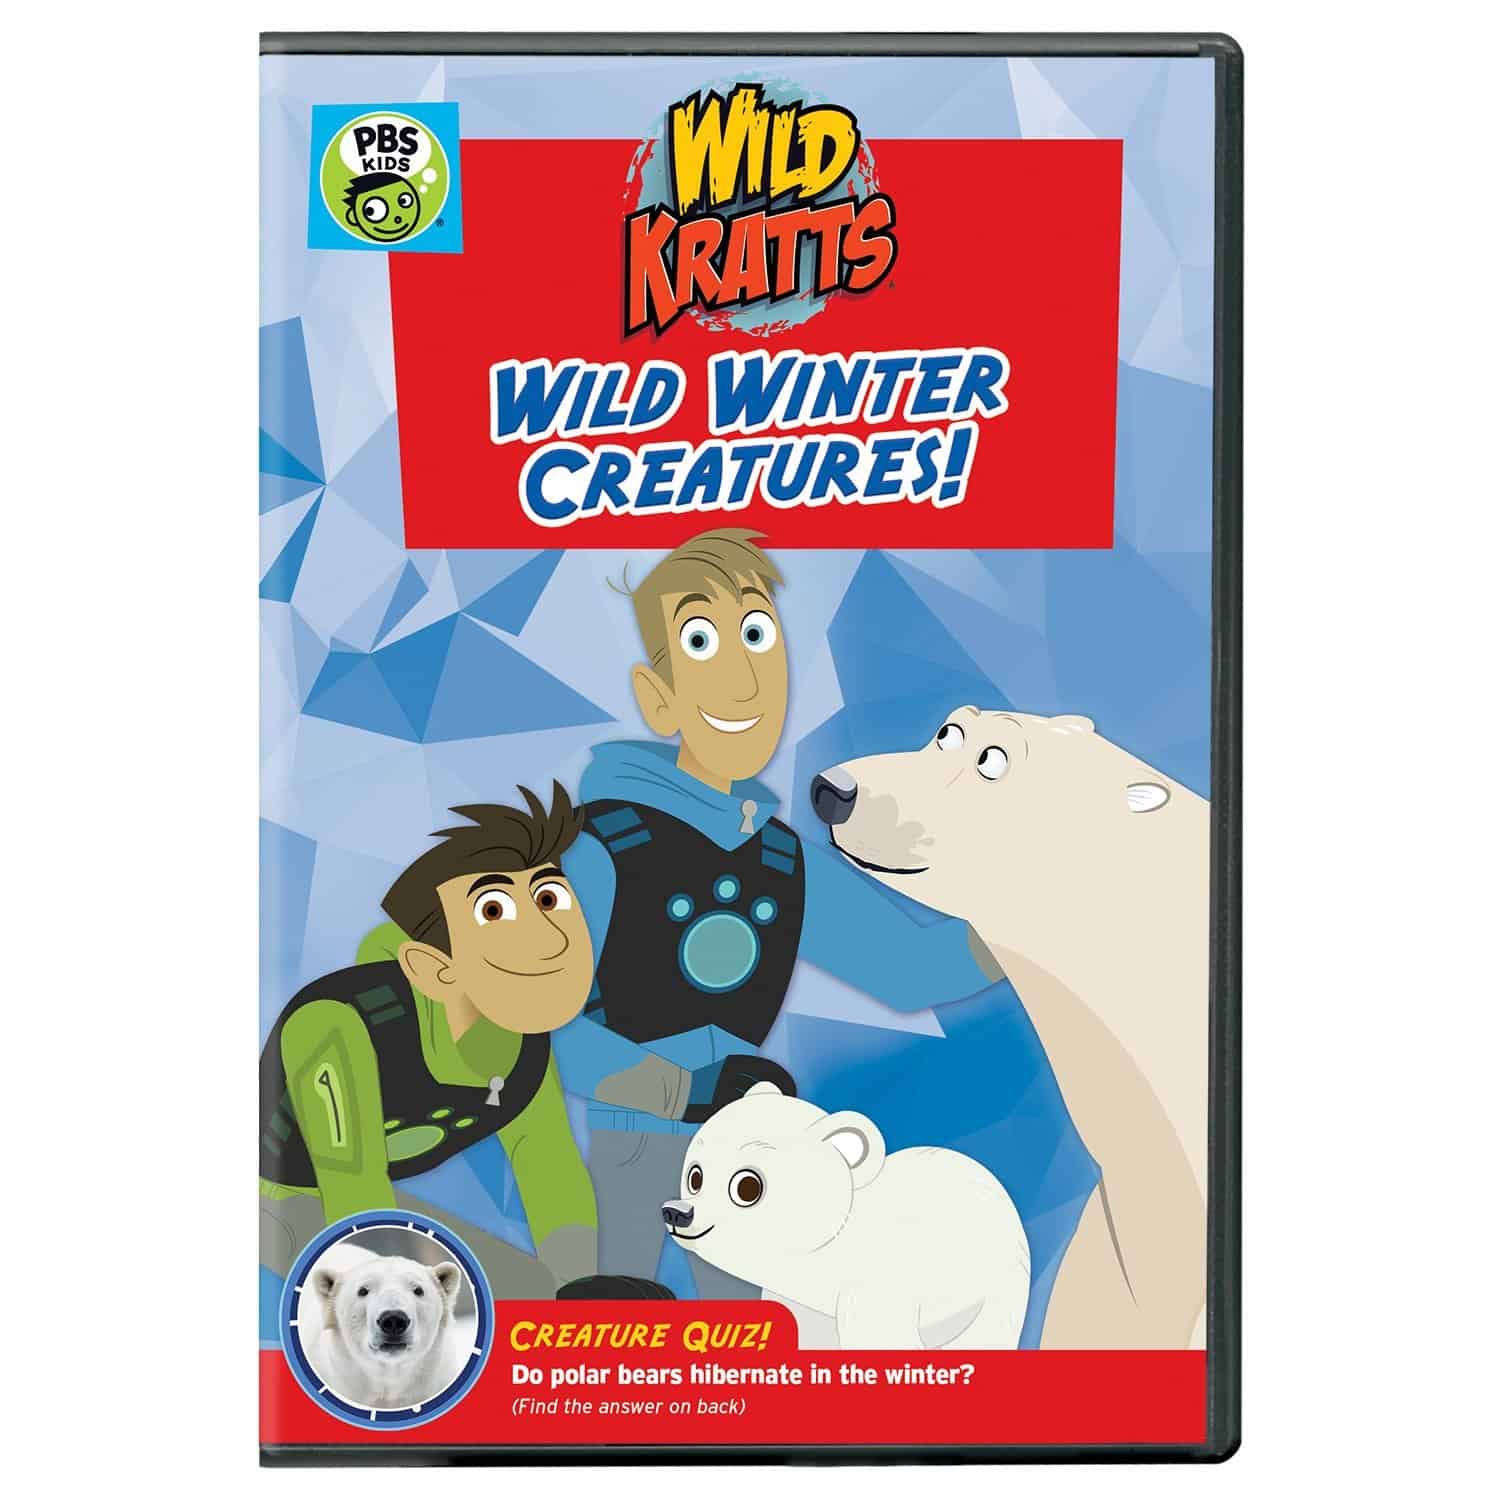 Wild Kratts Wild Winter Creatures DVD